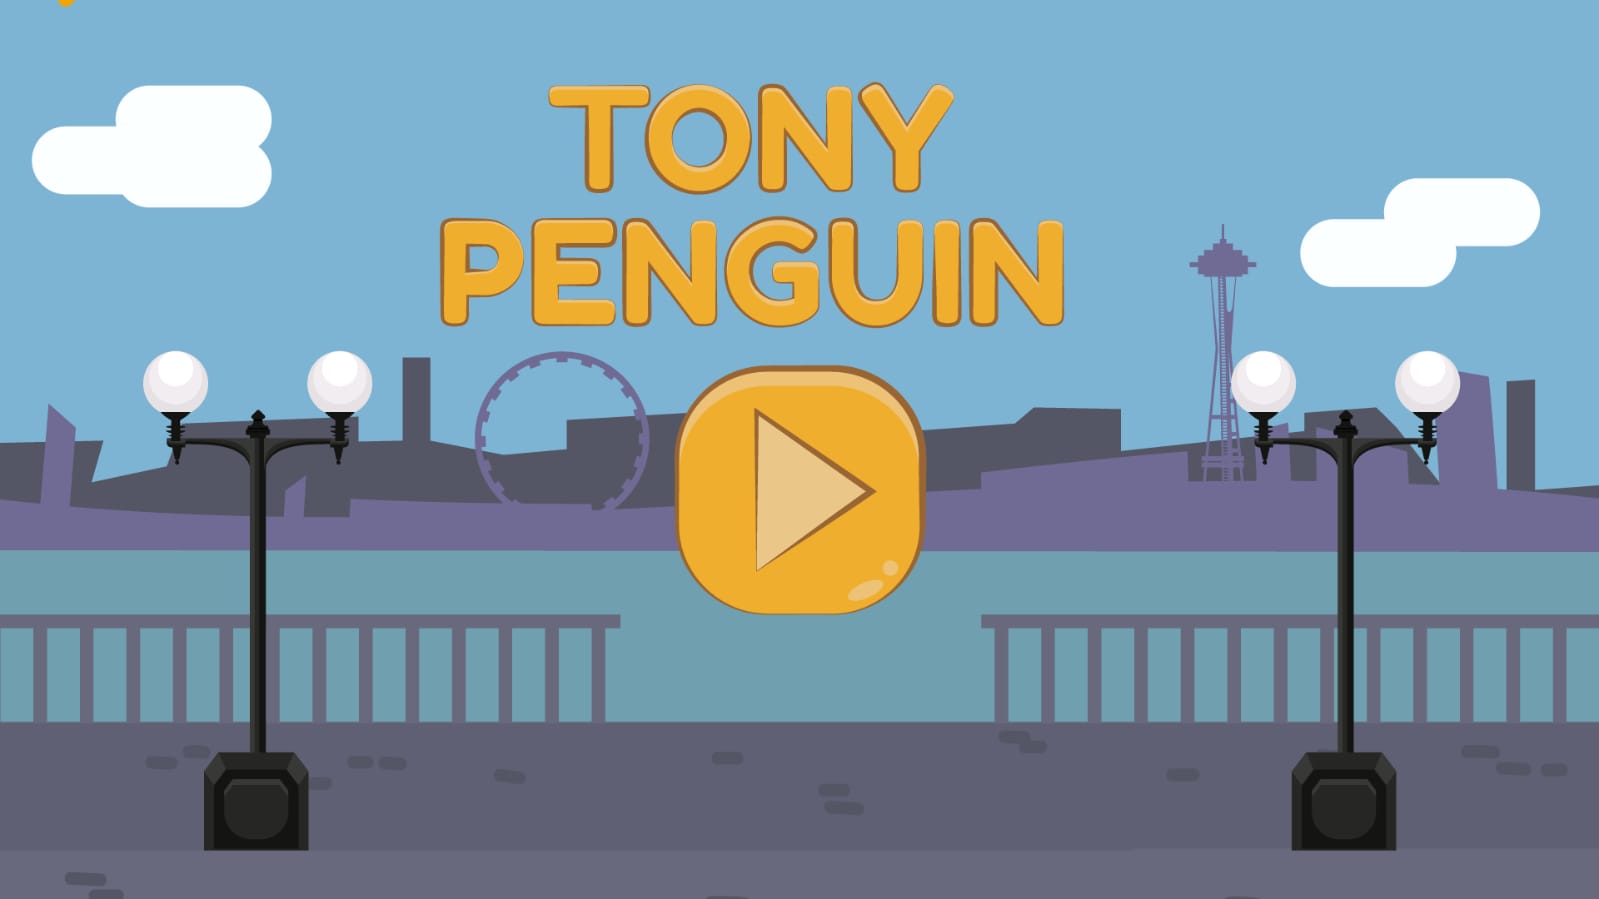 Tony Penguin